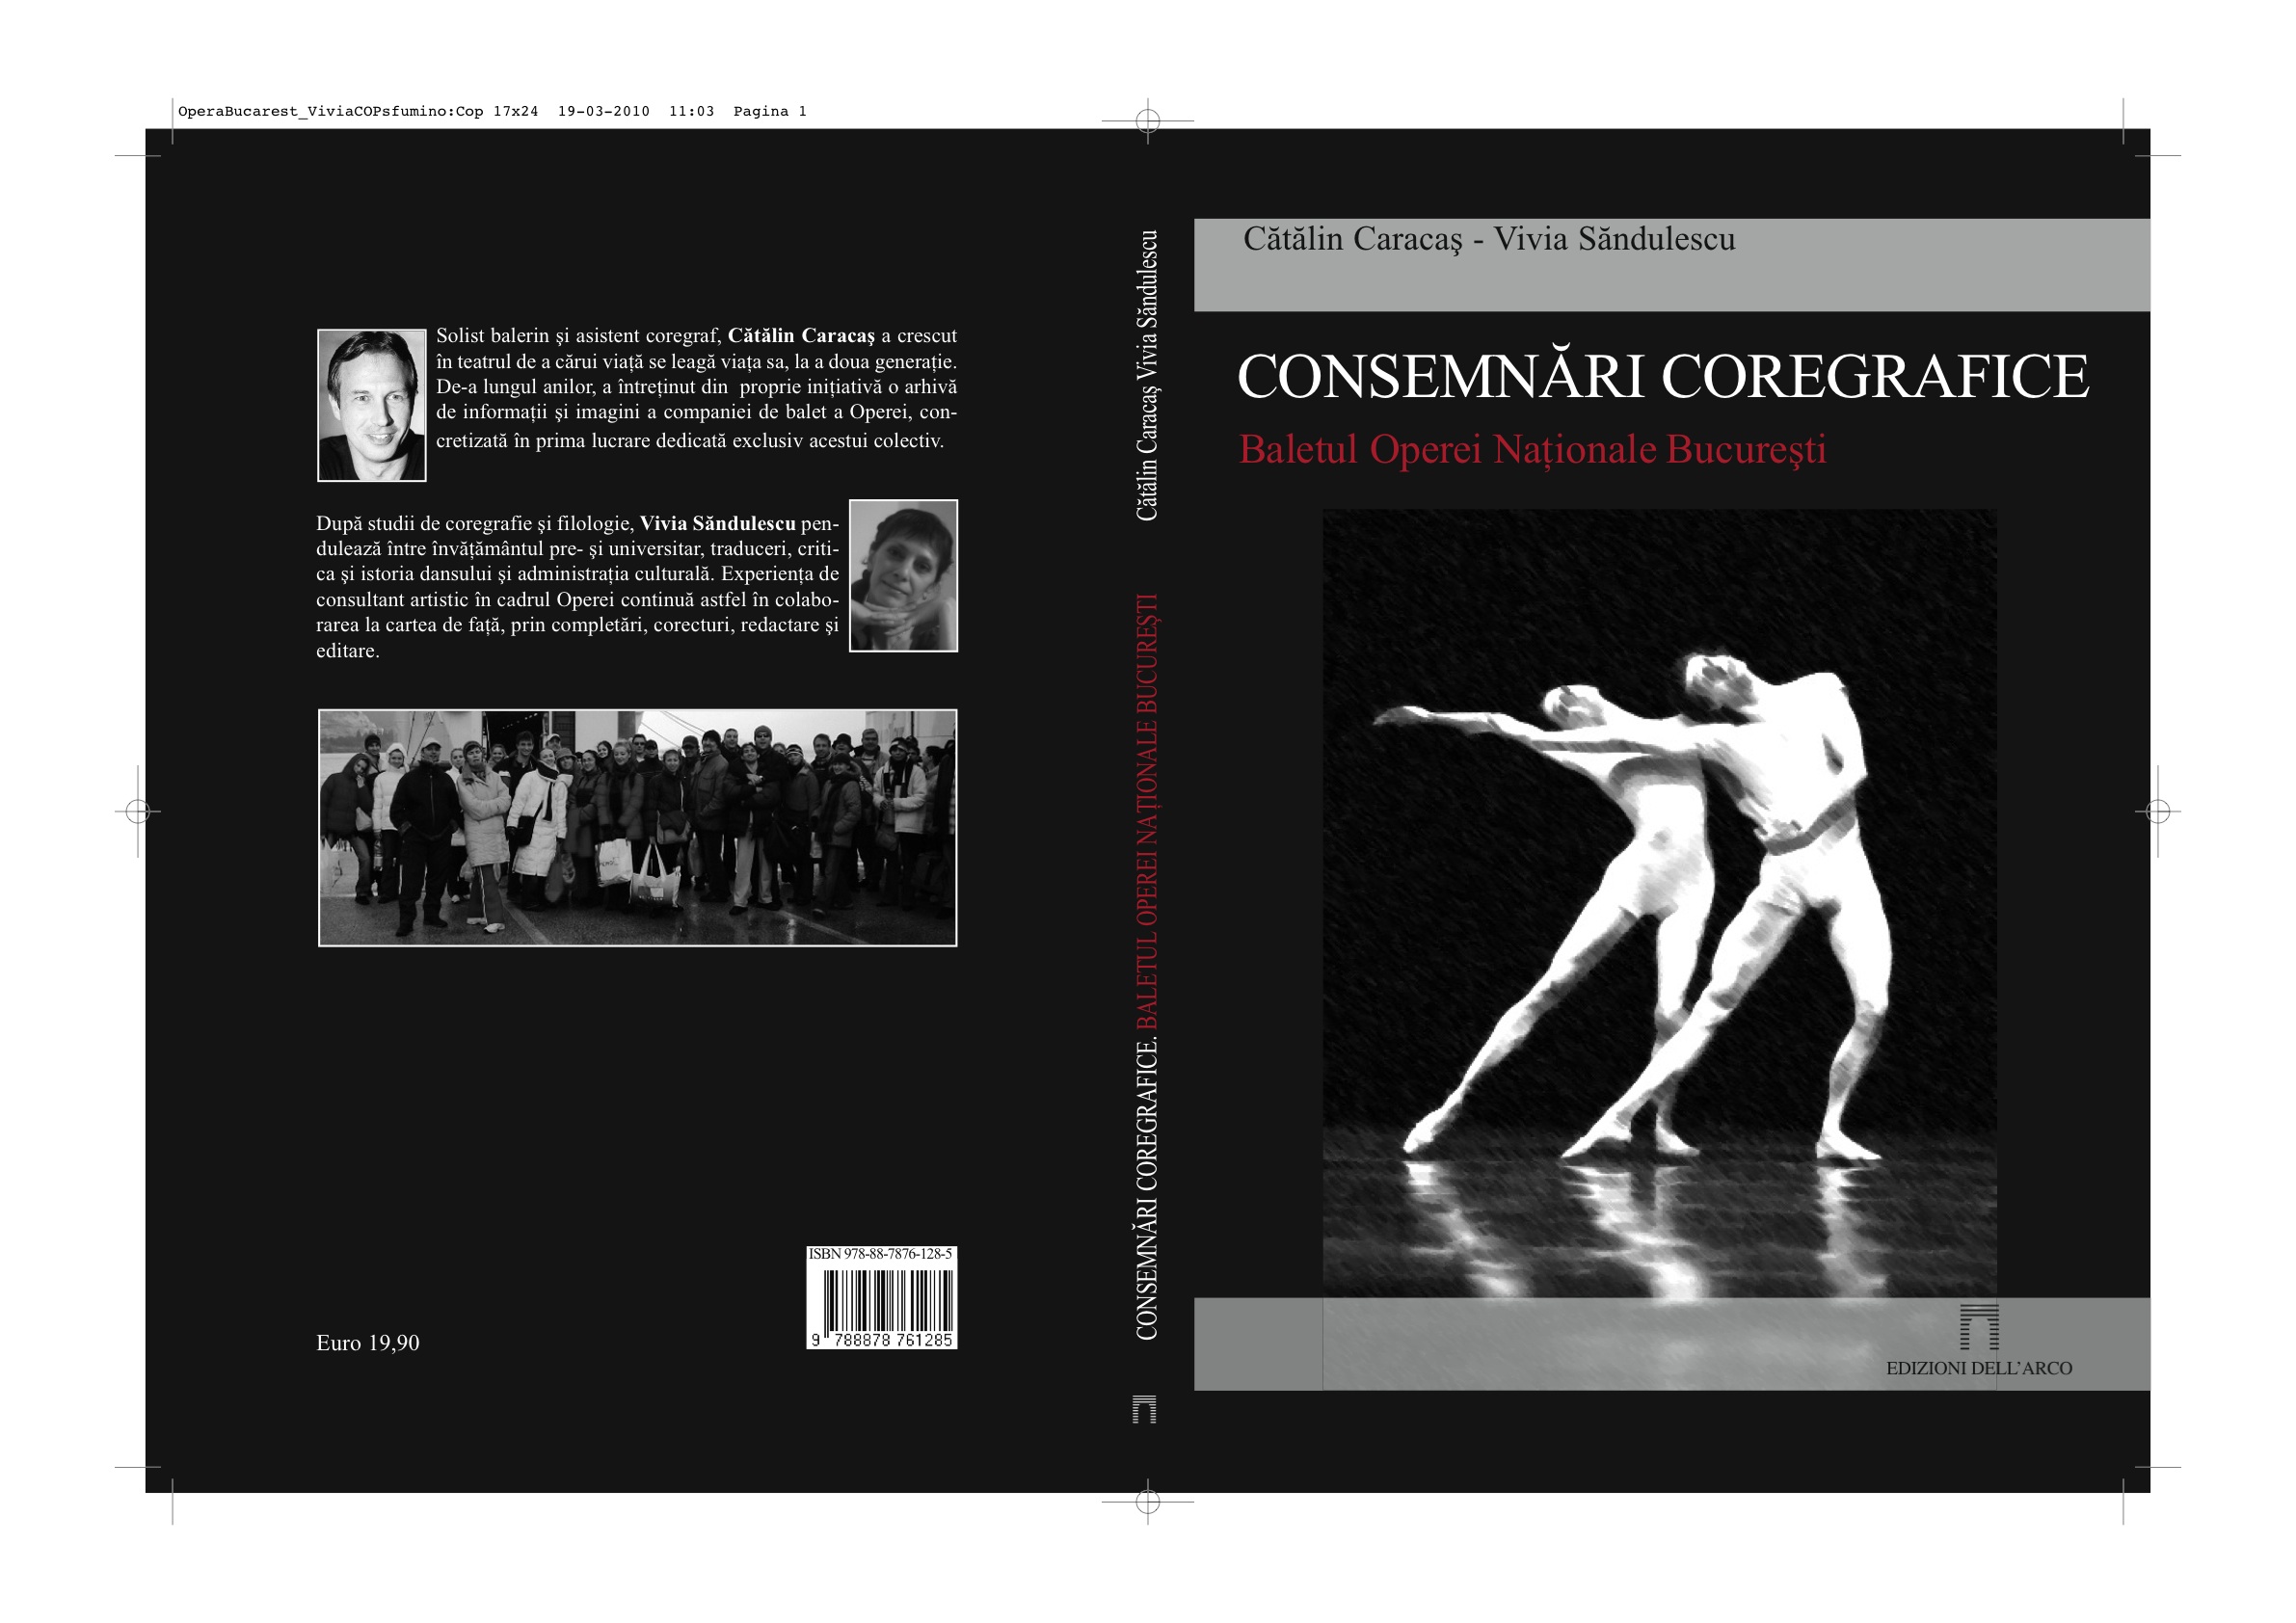 Milano 27 marzo 2010. “Quaderni coreografici del balletto dell’Opera Nazionale di Bucarest”